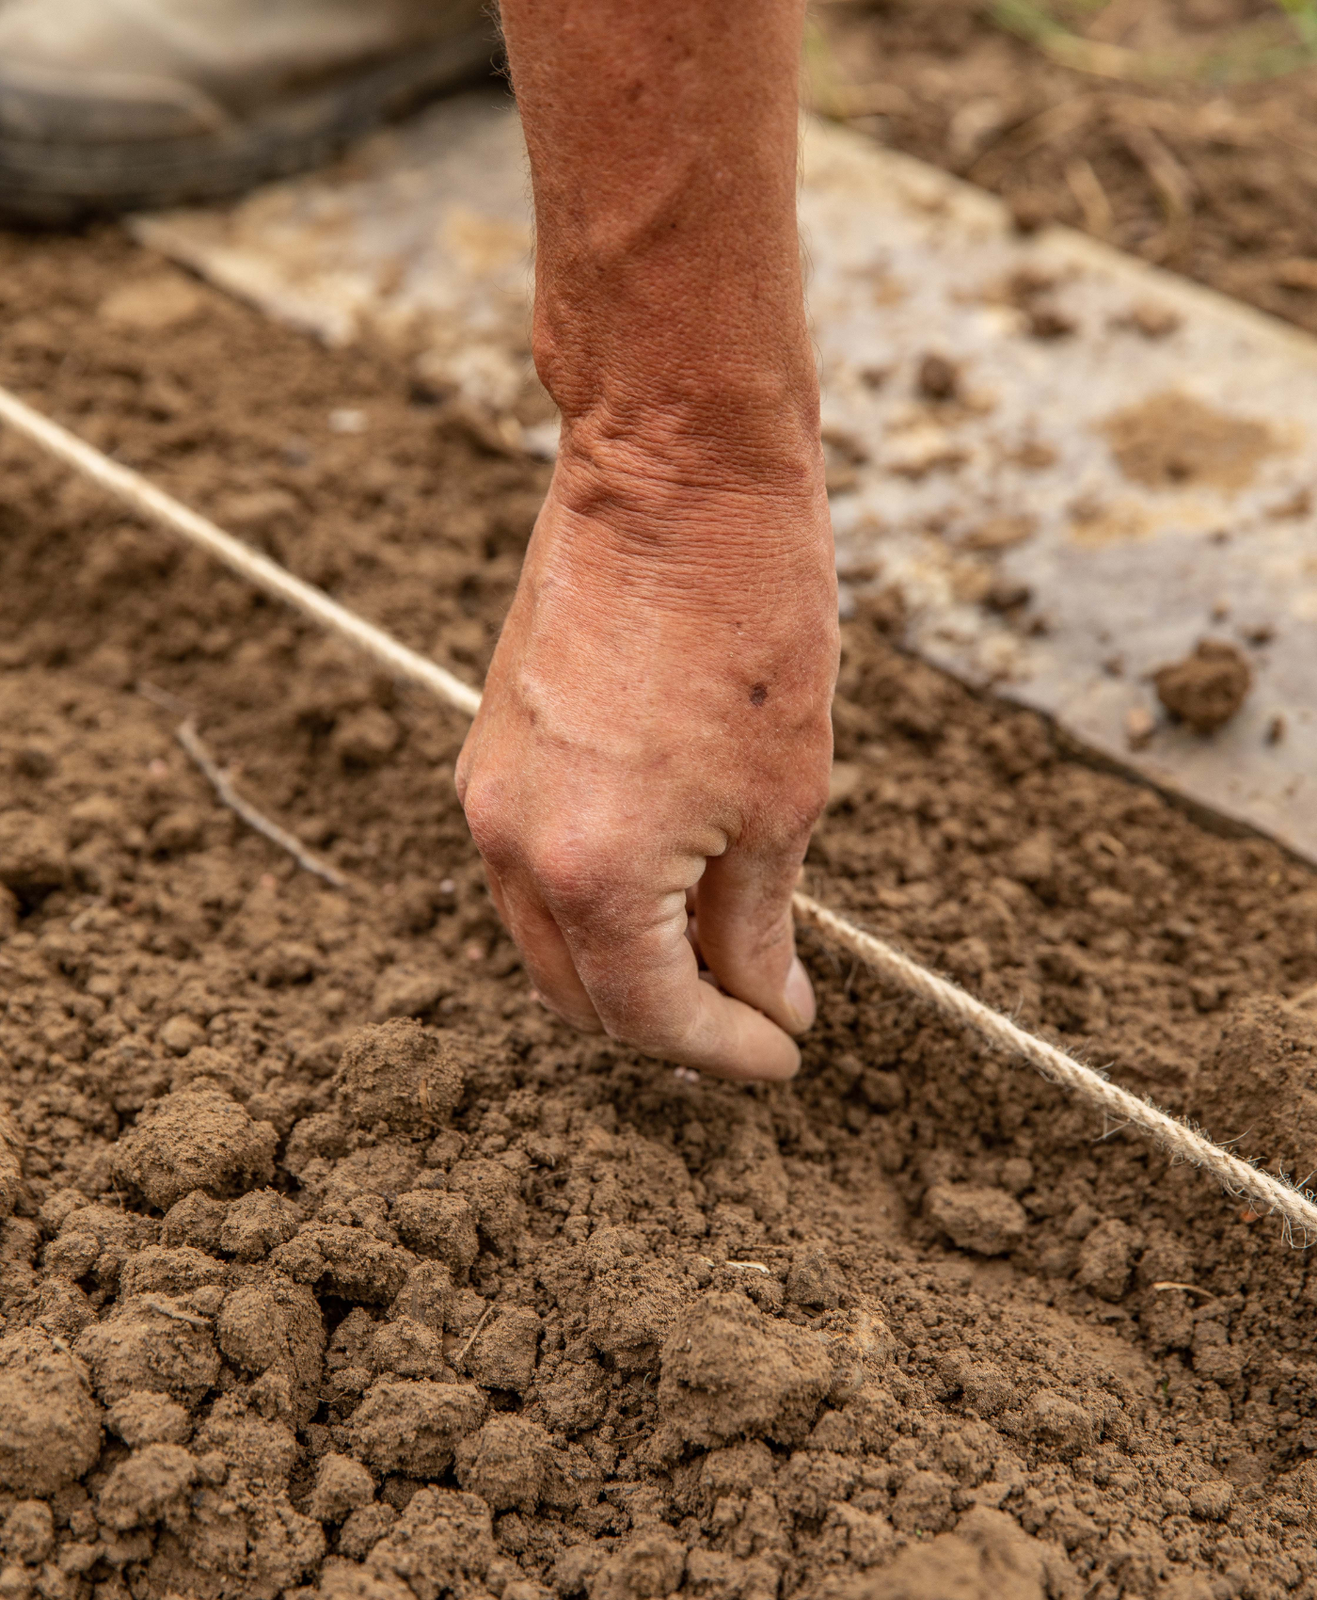 Un homme en train d'ajouter des graines de semences dans son sol